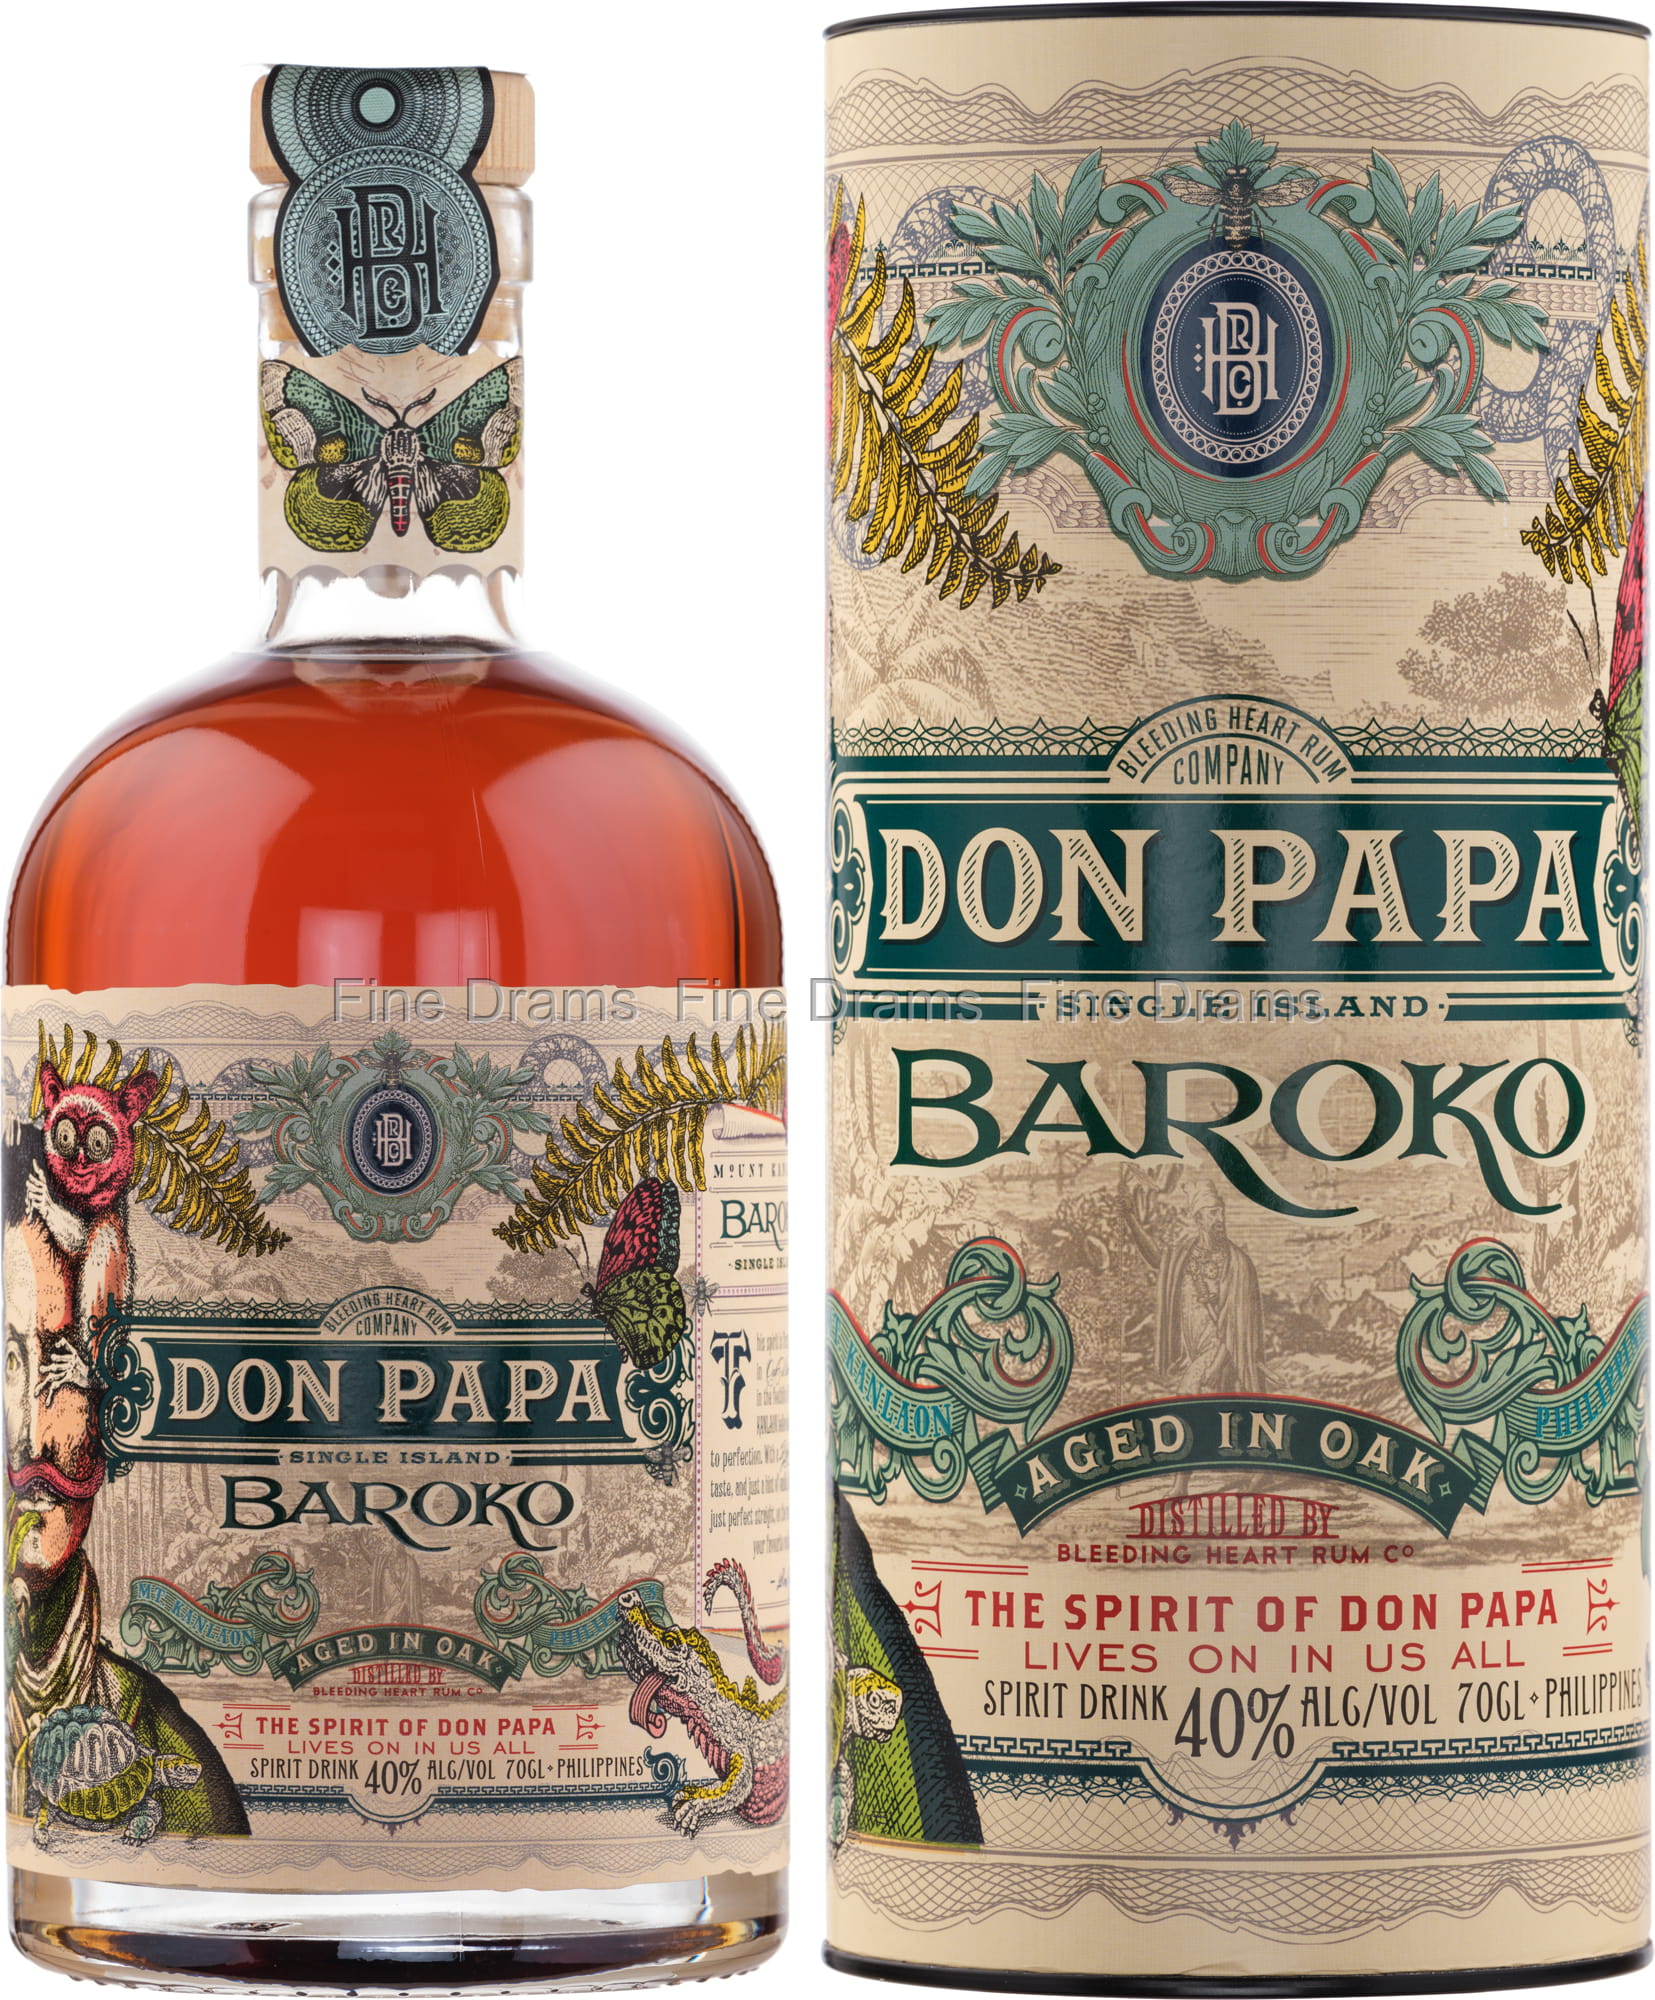 Don Papa Masskara Rum - Spirits from The Whisky World UK